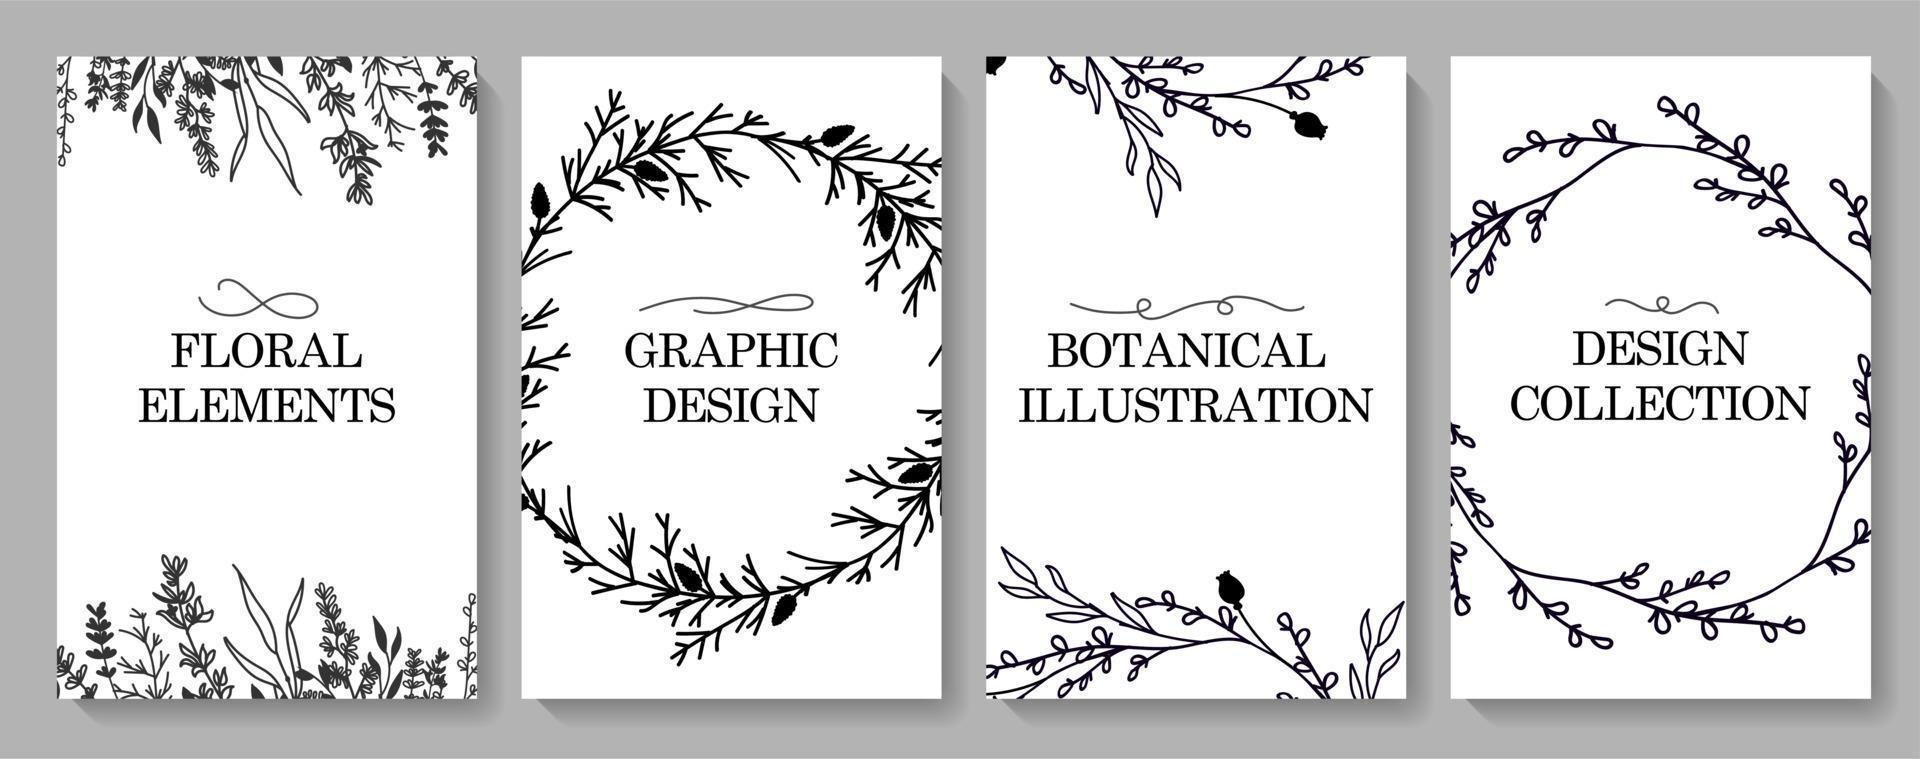 minimalistisch ontwerp van de sjabloon voor de huwelijksuitnodiging, bloemen bloemenprint in de stijl van een zwarte lijn. ansichtkaarten, sjablonen, feestelijke decoratie. vectorillustratie. vector